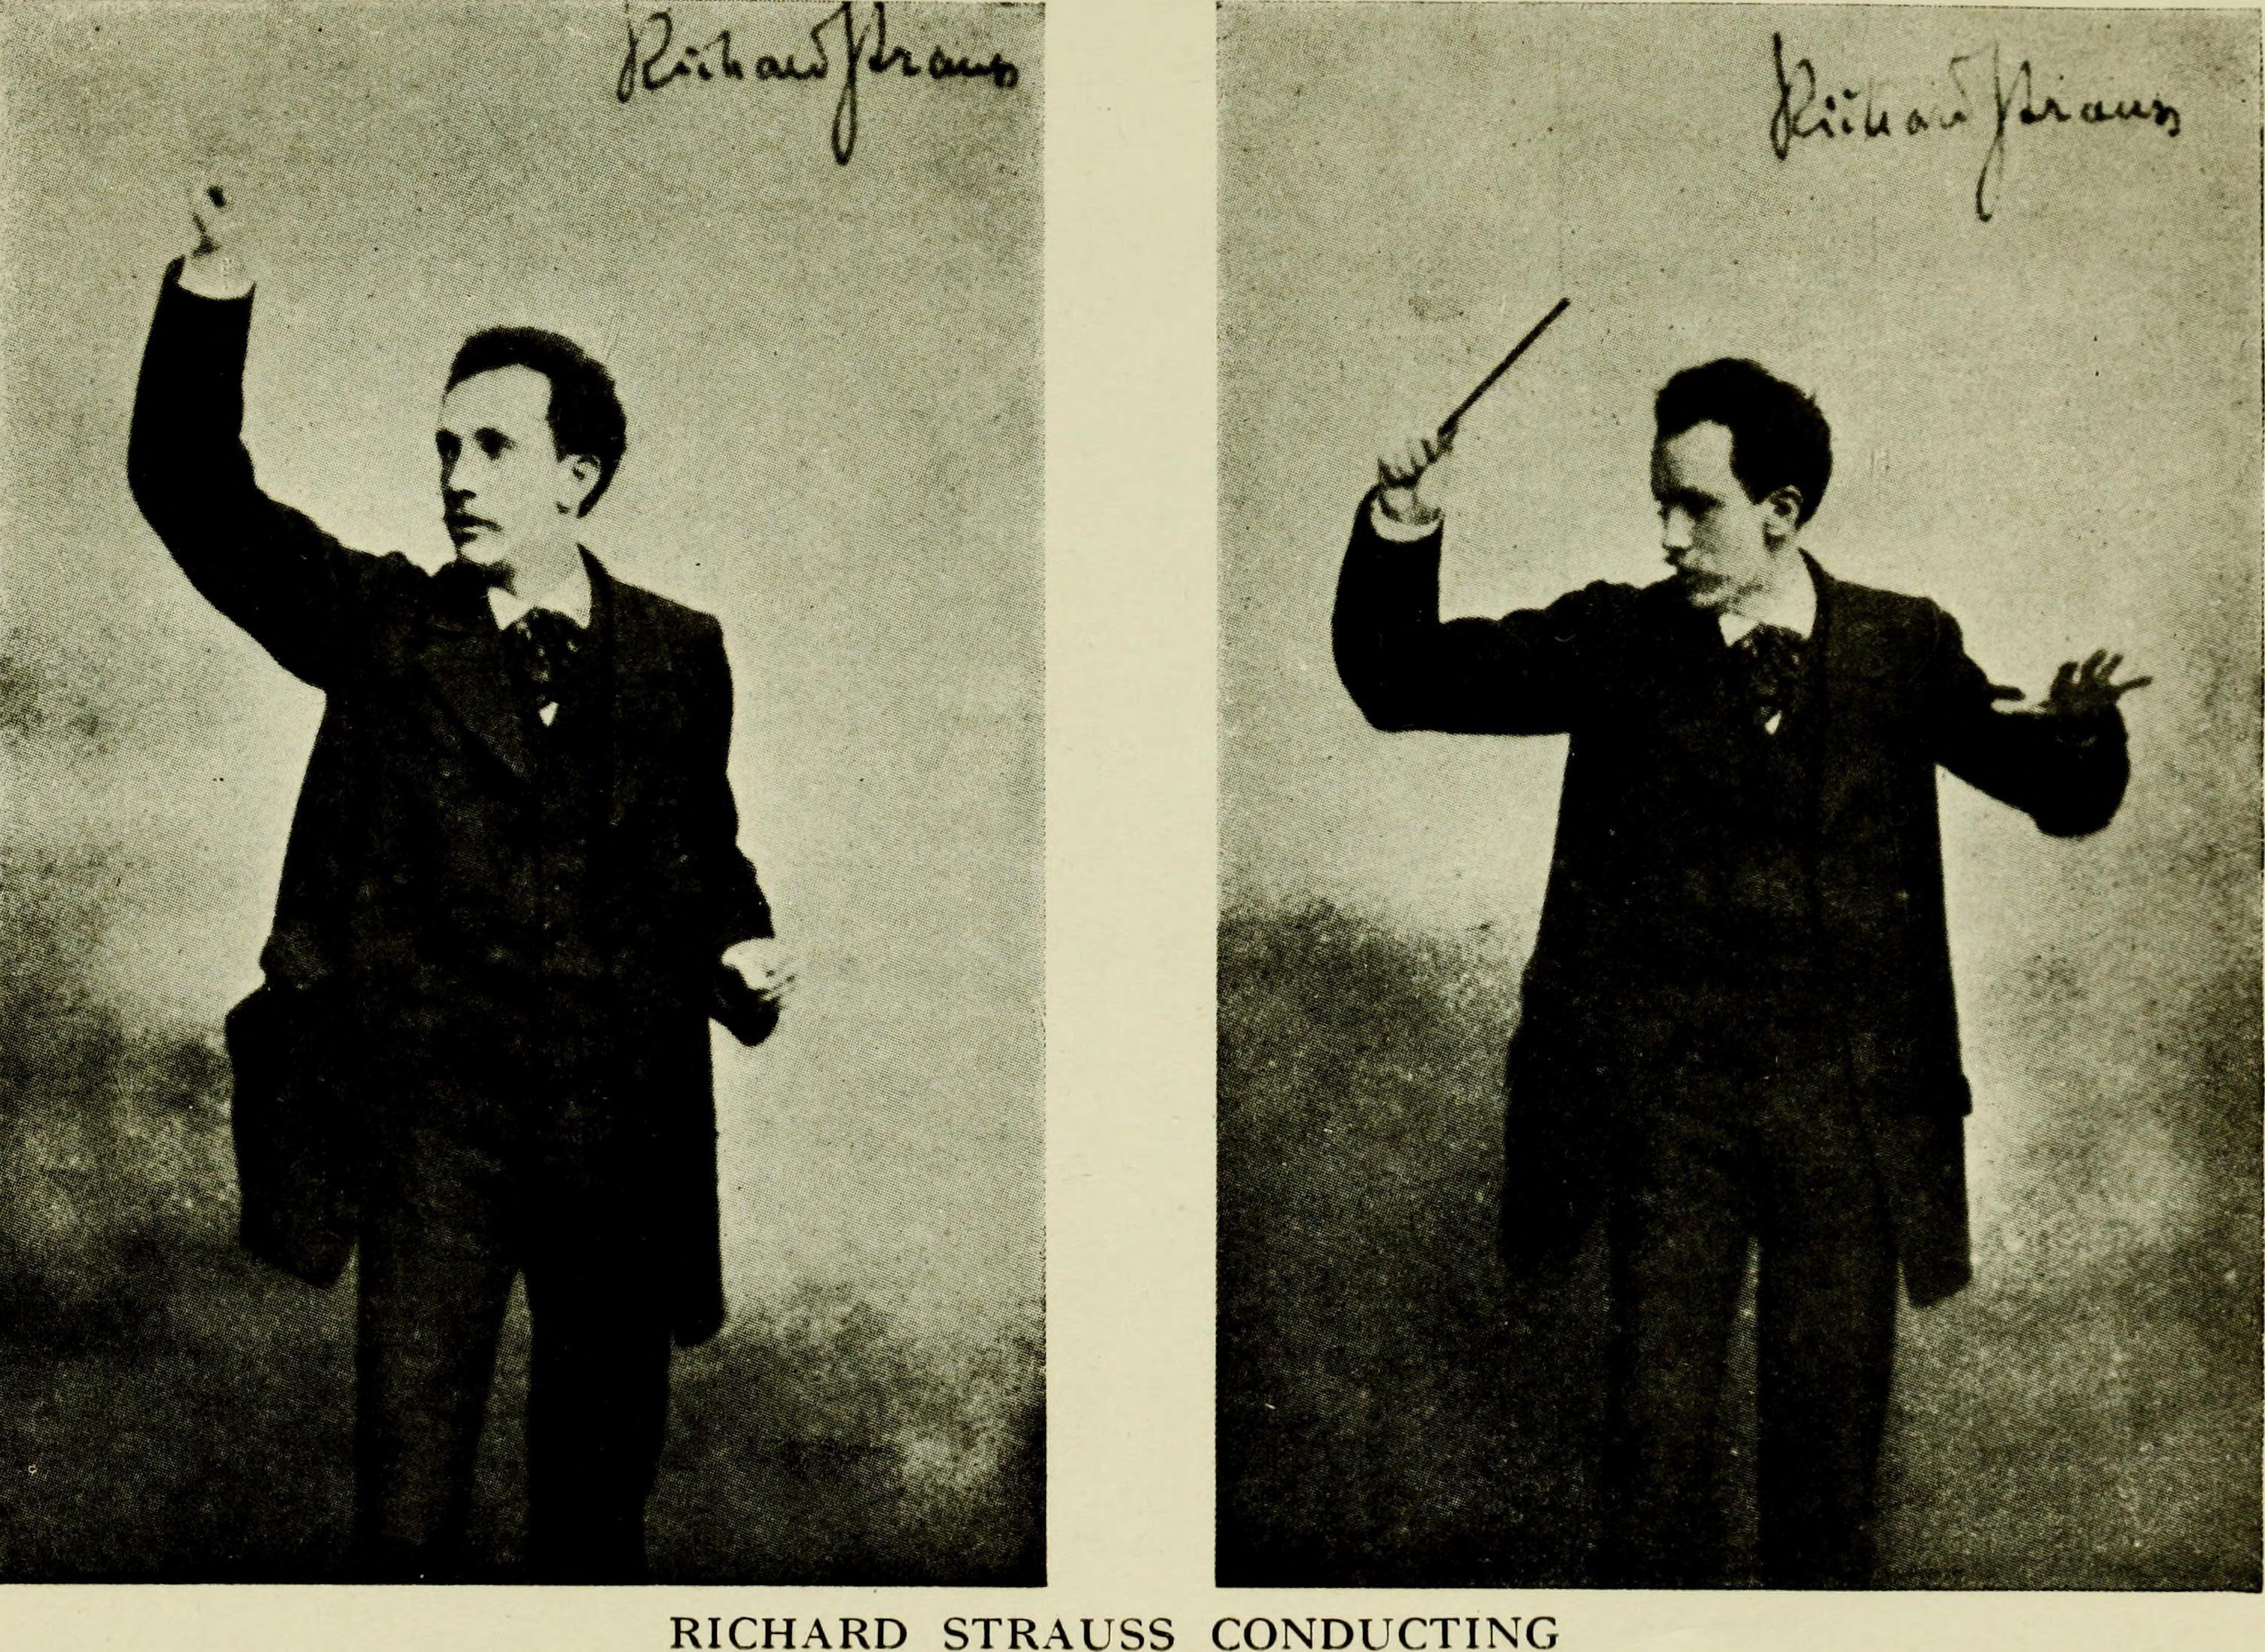 Graham Abbott on Richard Strauss